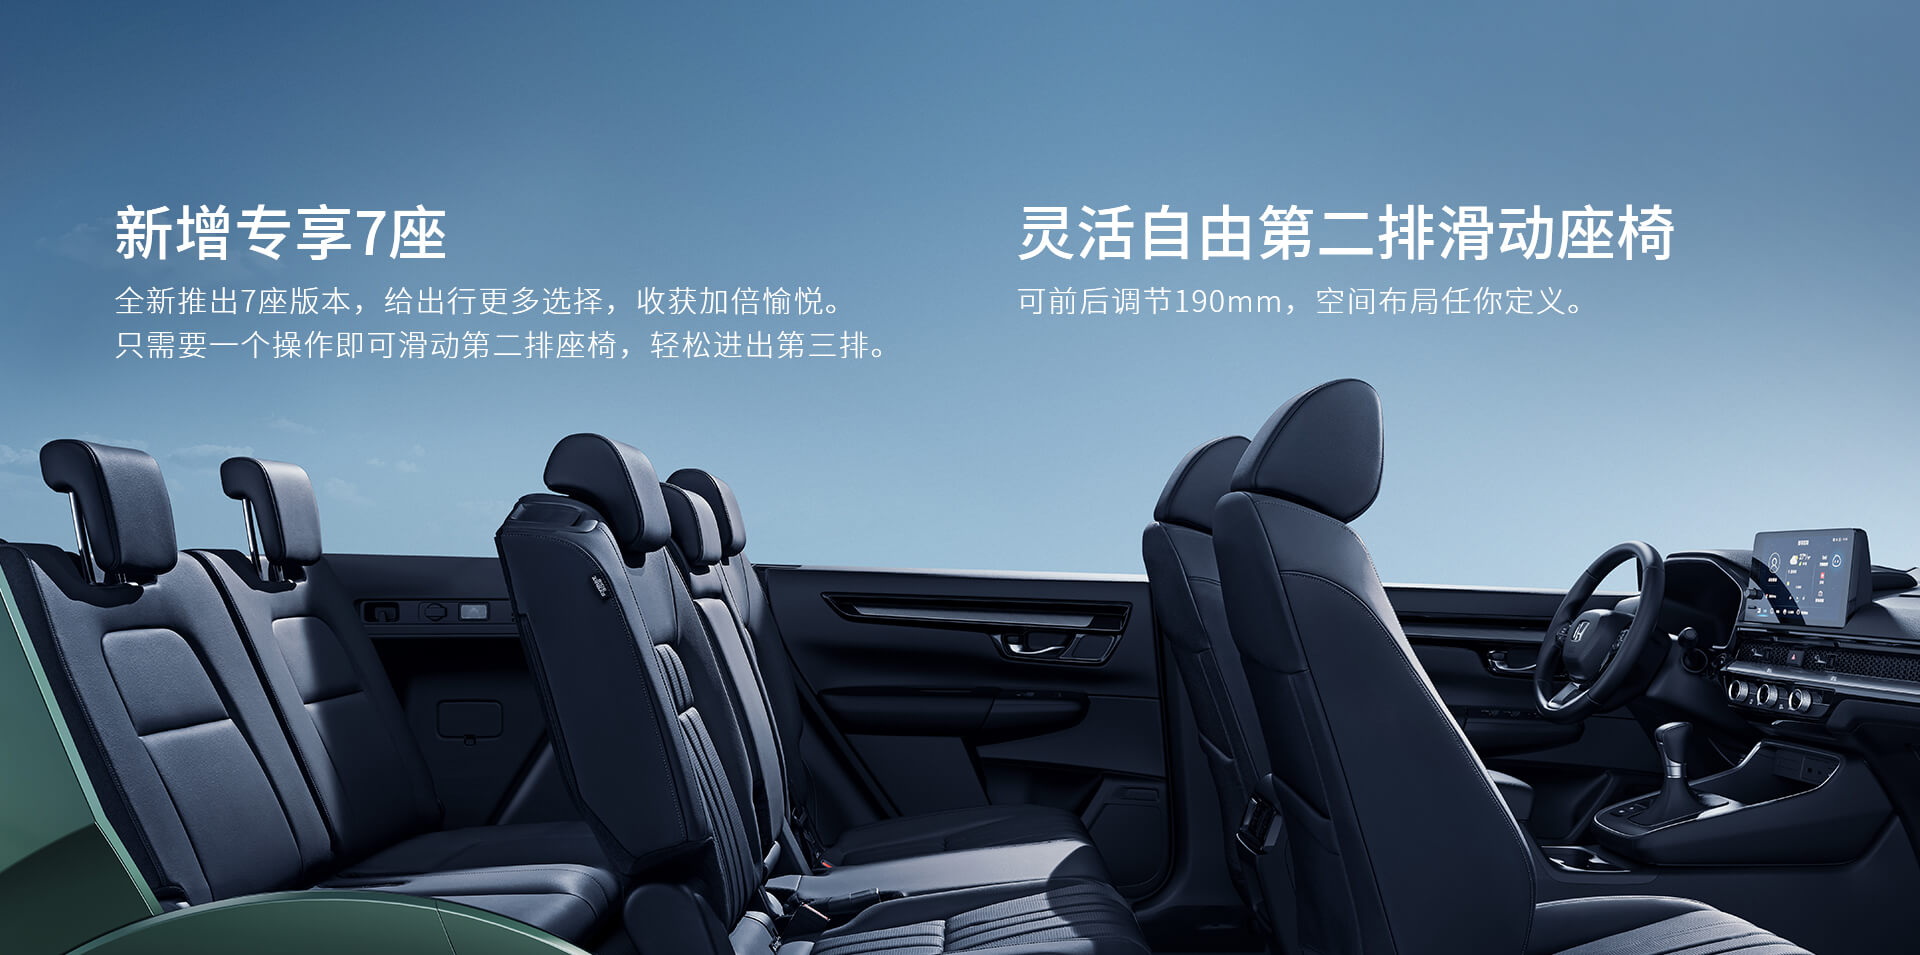 Honda Breeze - CR-V Trung Quốc được nhá hàng thế hệ mới - Ảnh 10.